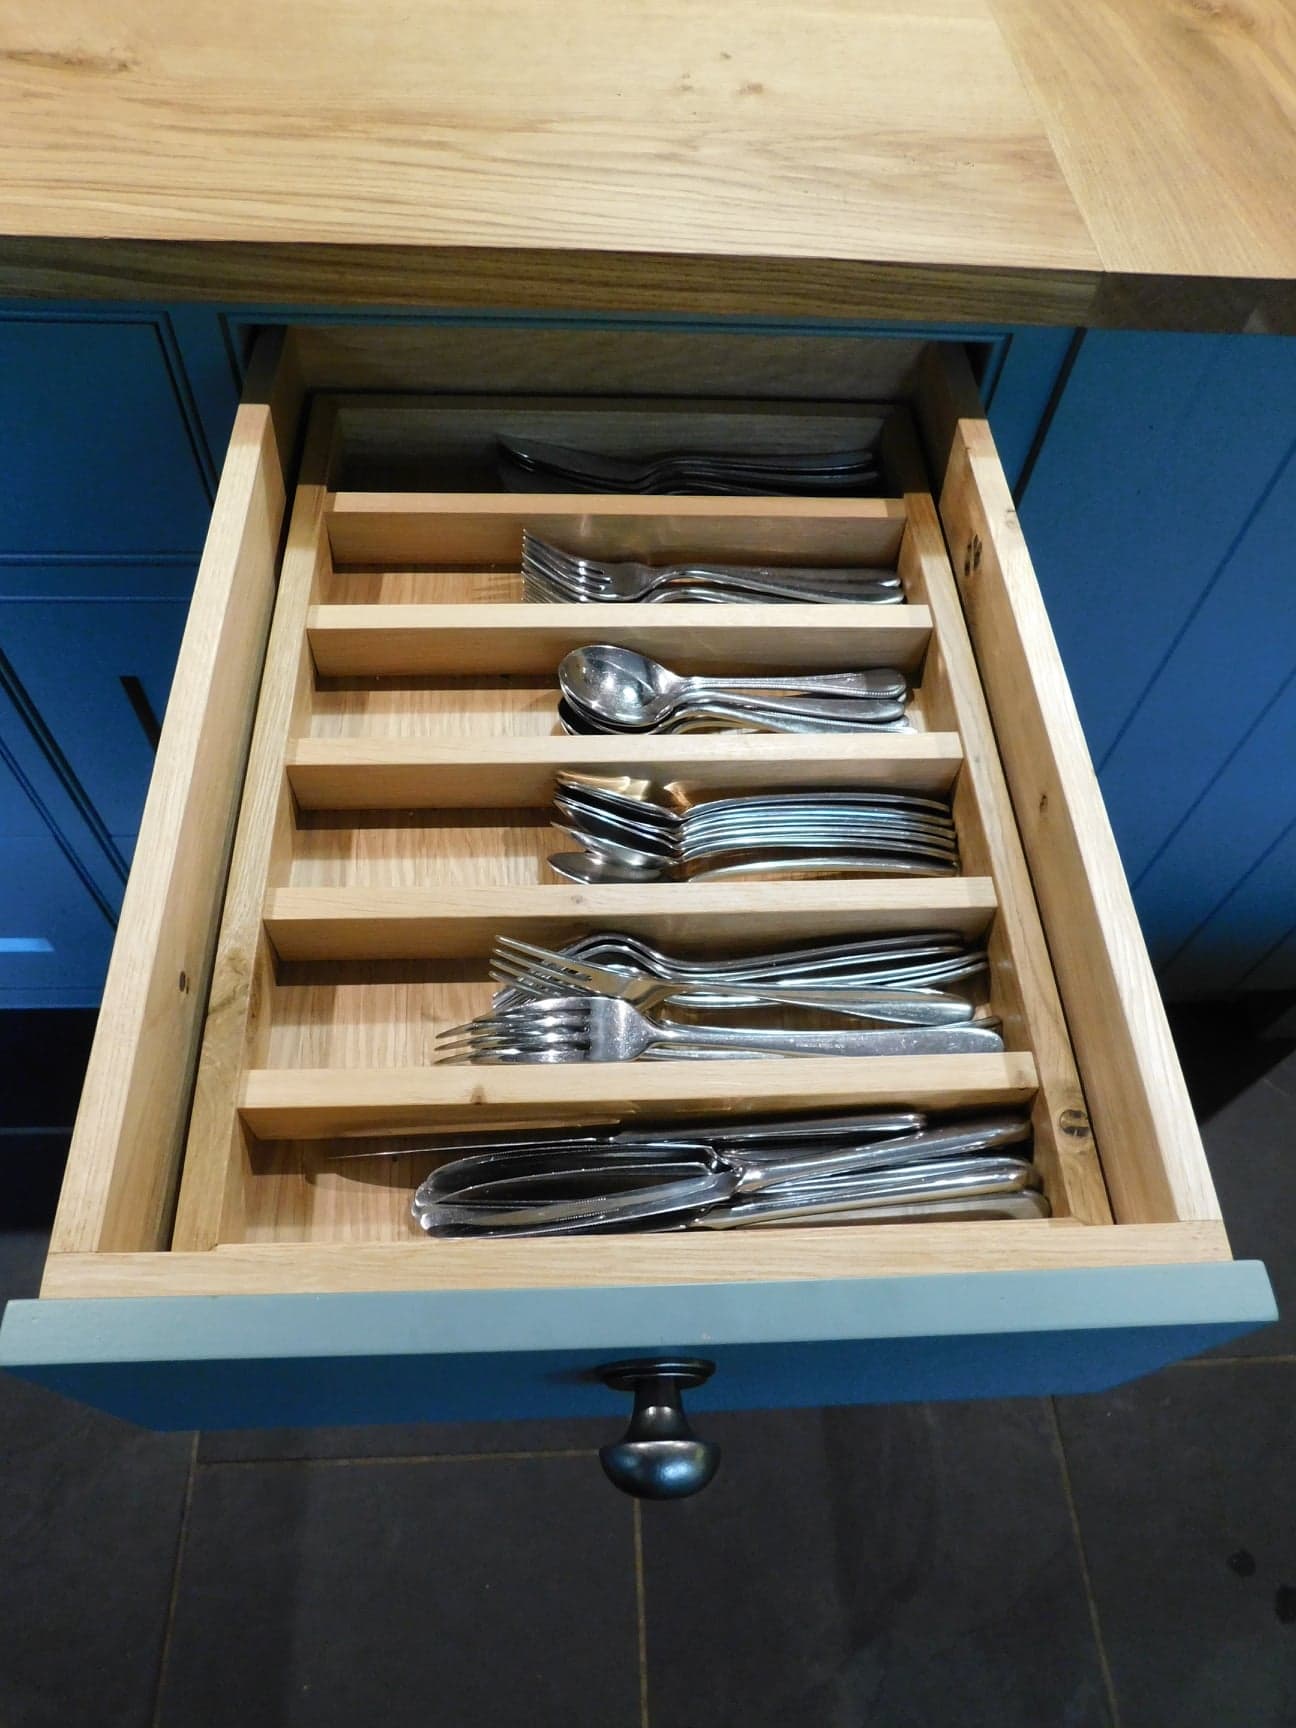 An open drawer revealing an array of utensils.